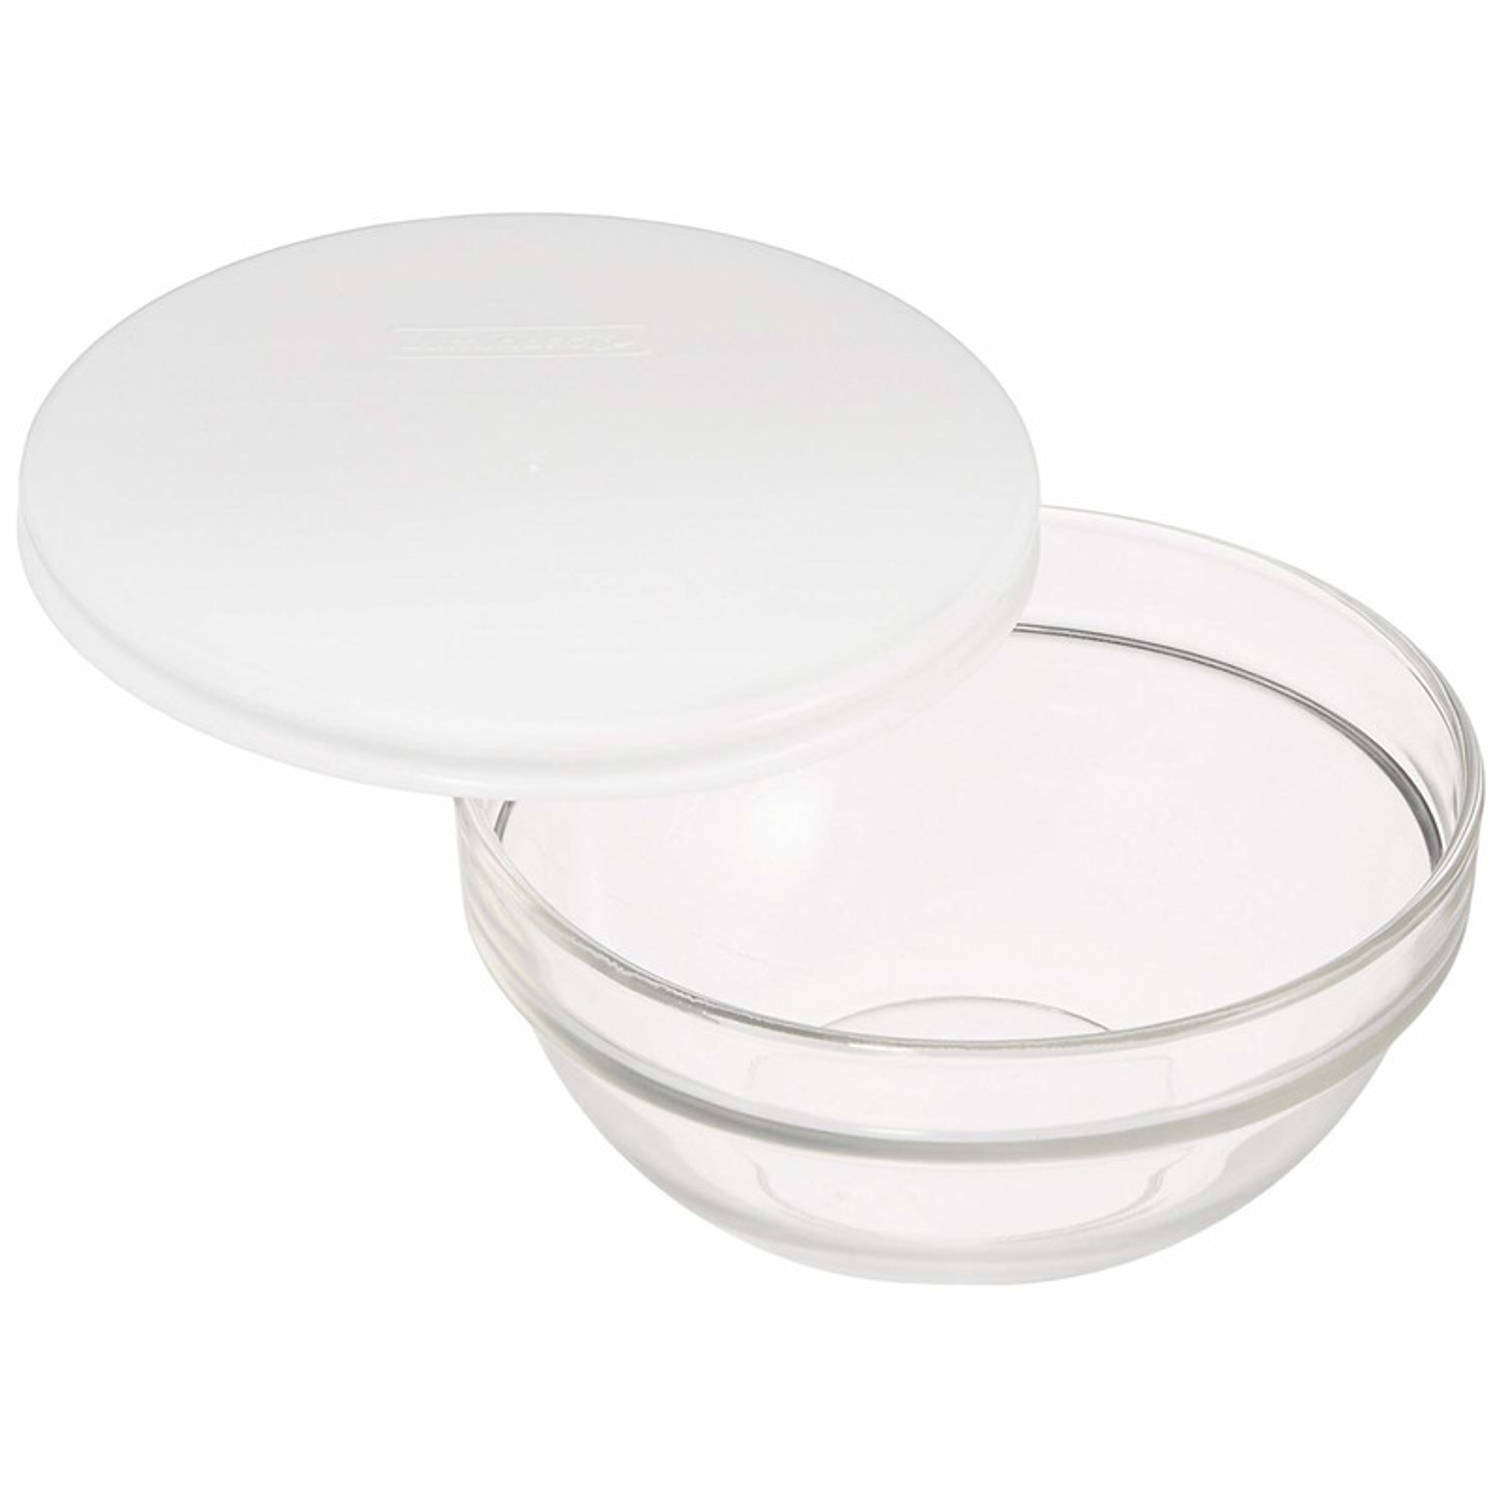 LUMINARC 3x Glazen schaal/kom met deksel 20 cm - Sla/salade serveren - Schalen/kommen van glas - Keukenbenodigdheden